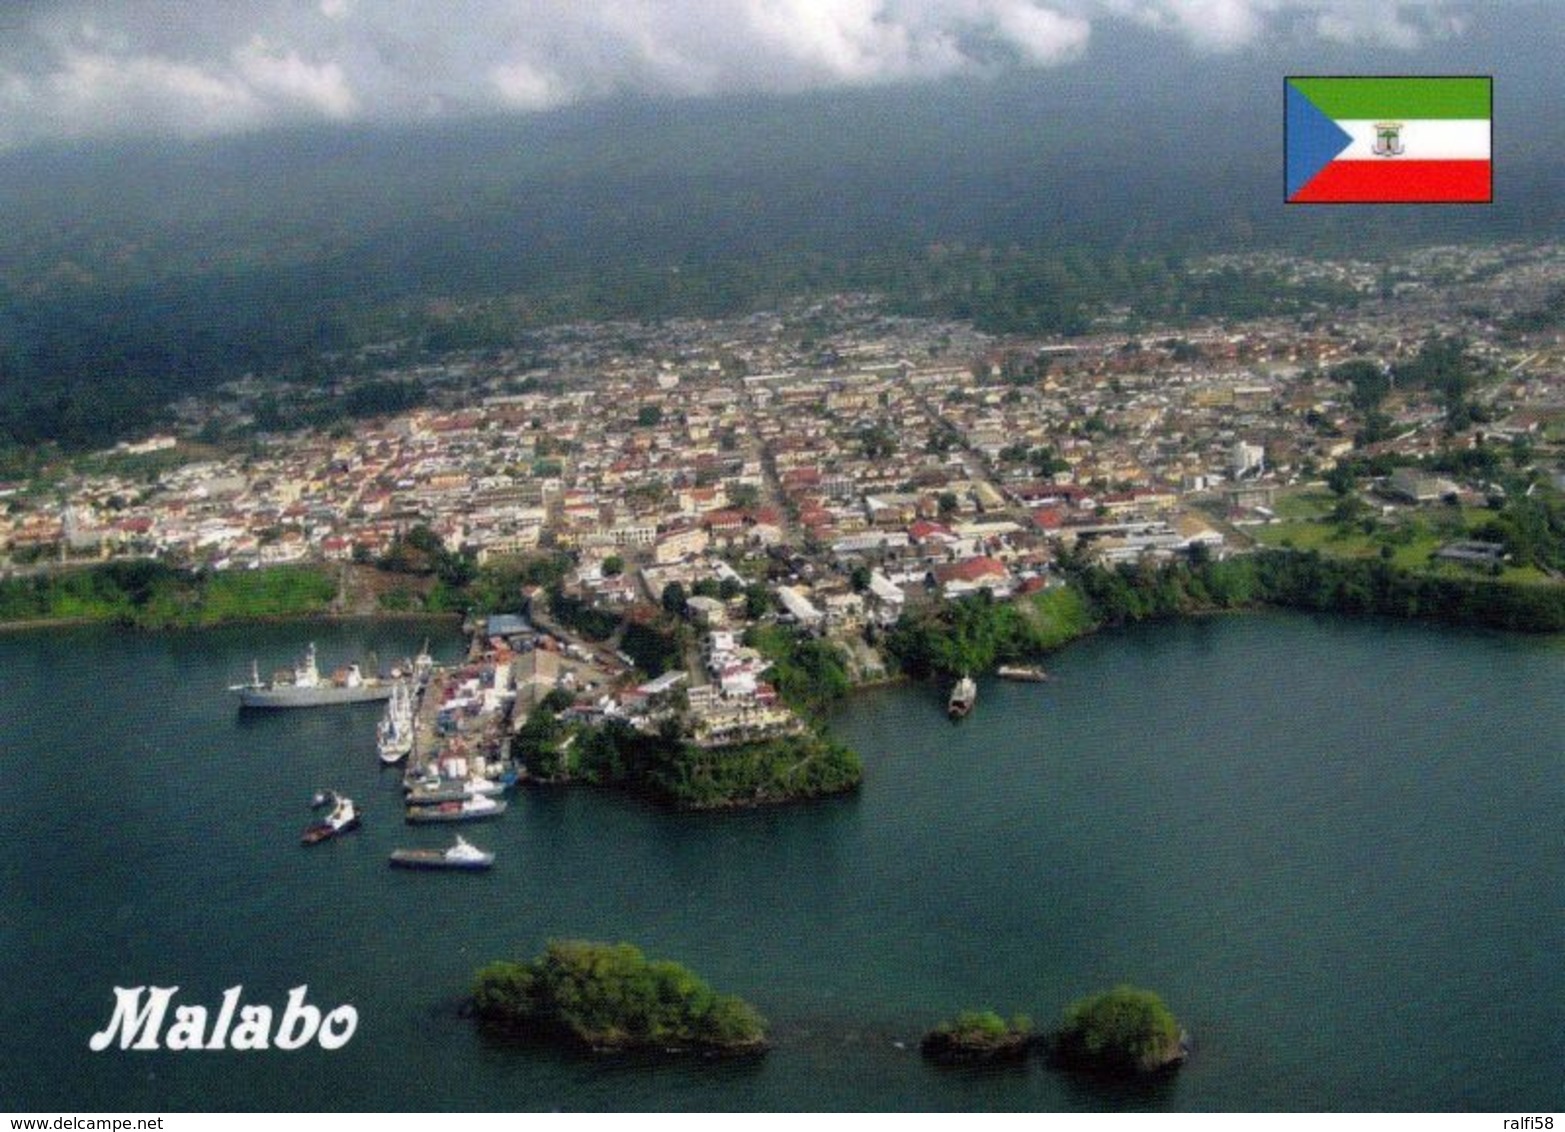 1 AK Äquatorial-Guinea * Blick Auf Die Hauptstadt Malabo, Sie Liegt An Der Nordküste Der Insel Bioko * - Guinea Ecuatorial